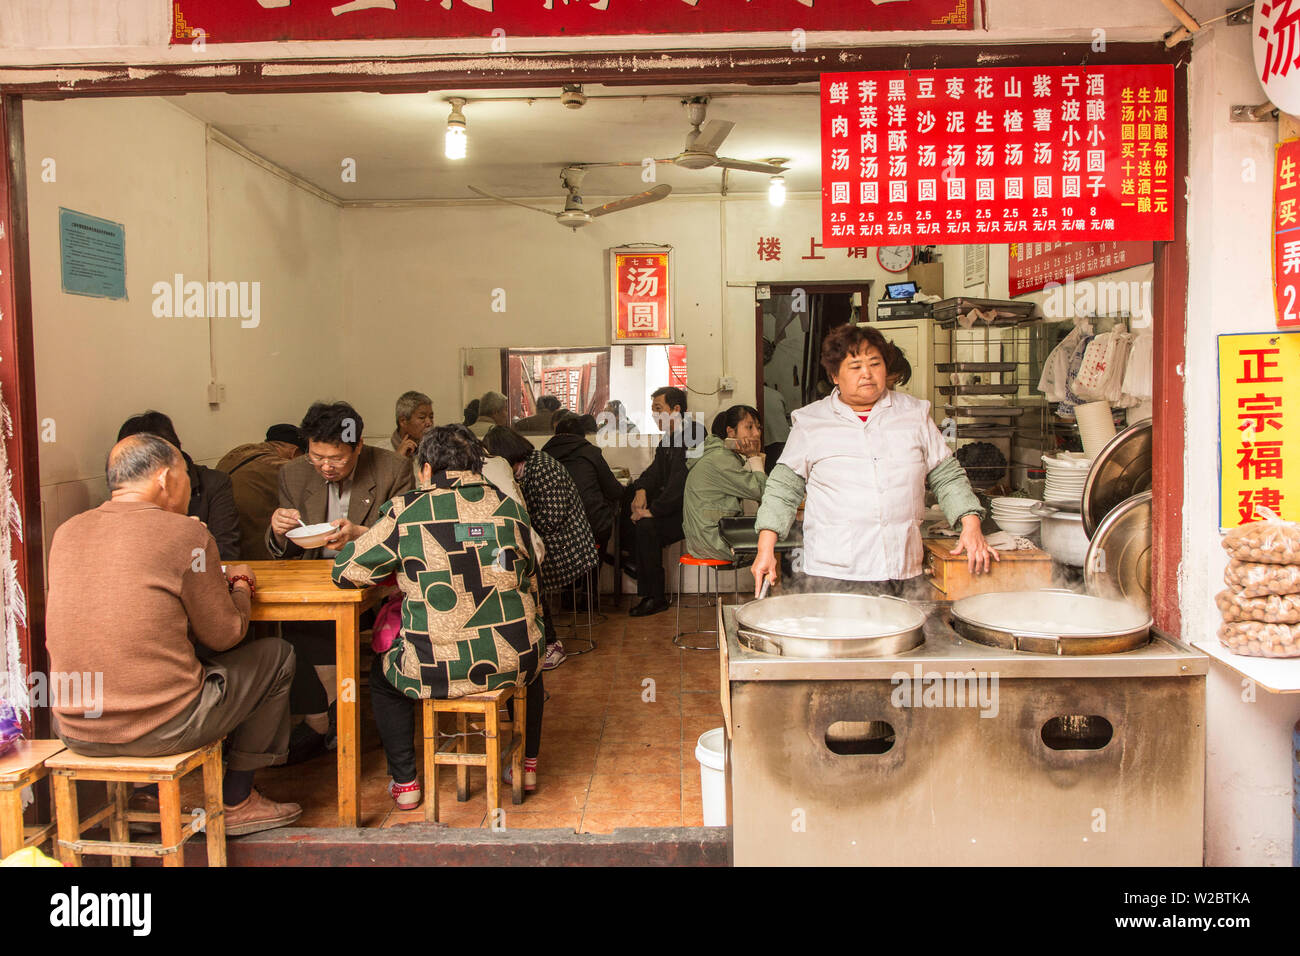 Local's restaurant, Qibao, Shanghai, China Stock Photo